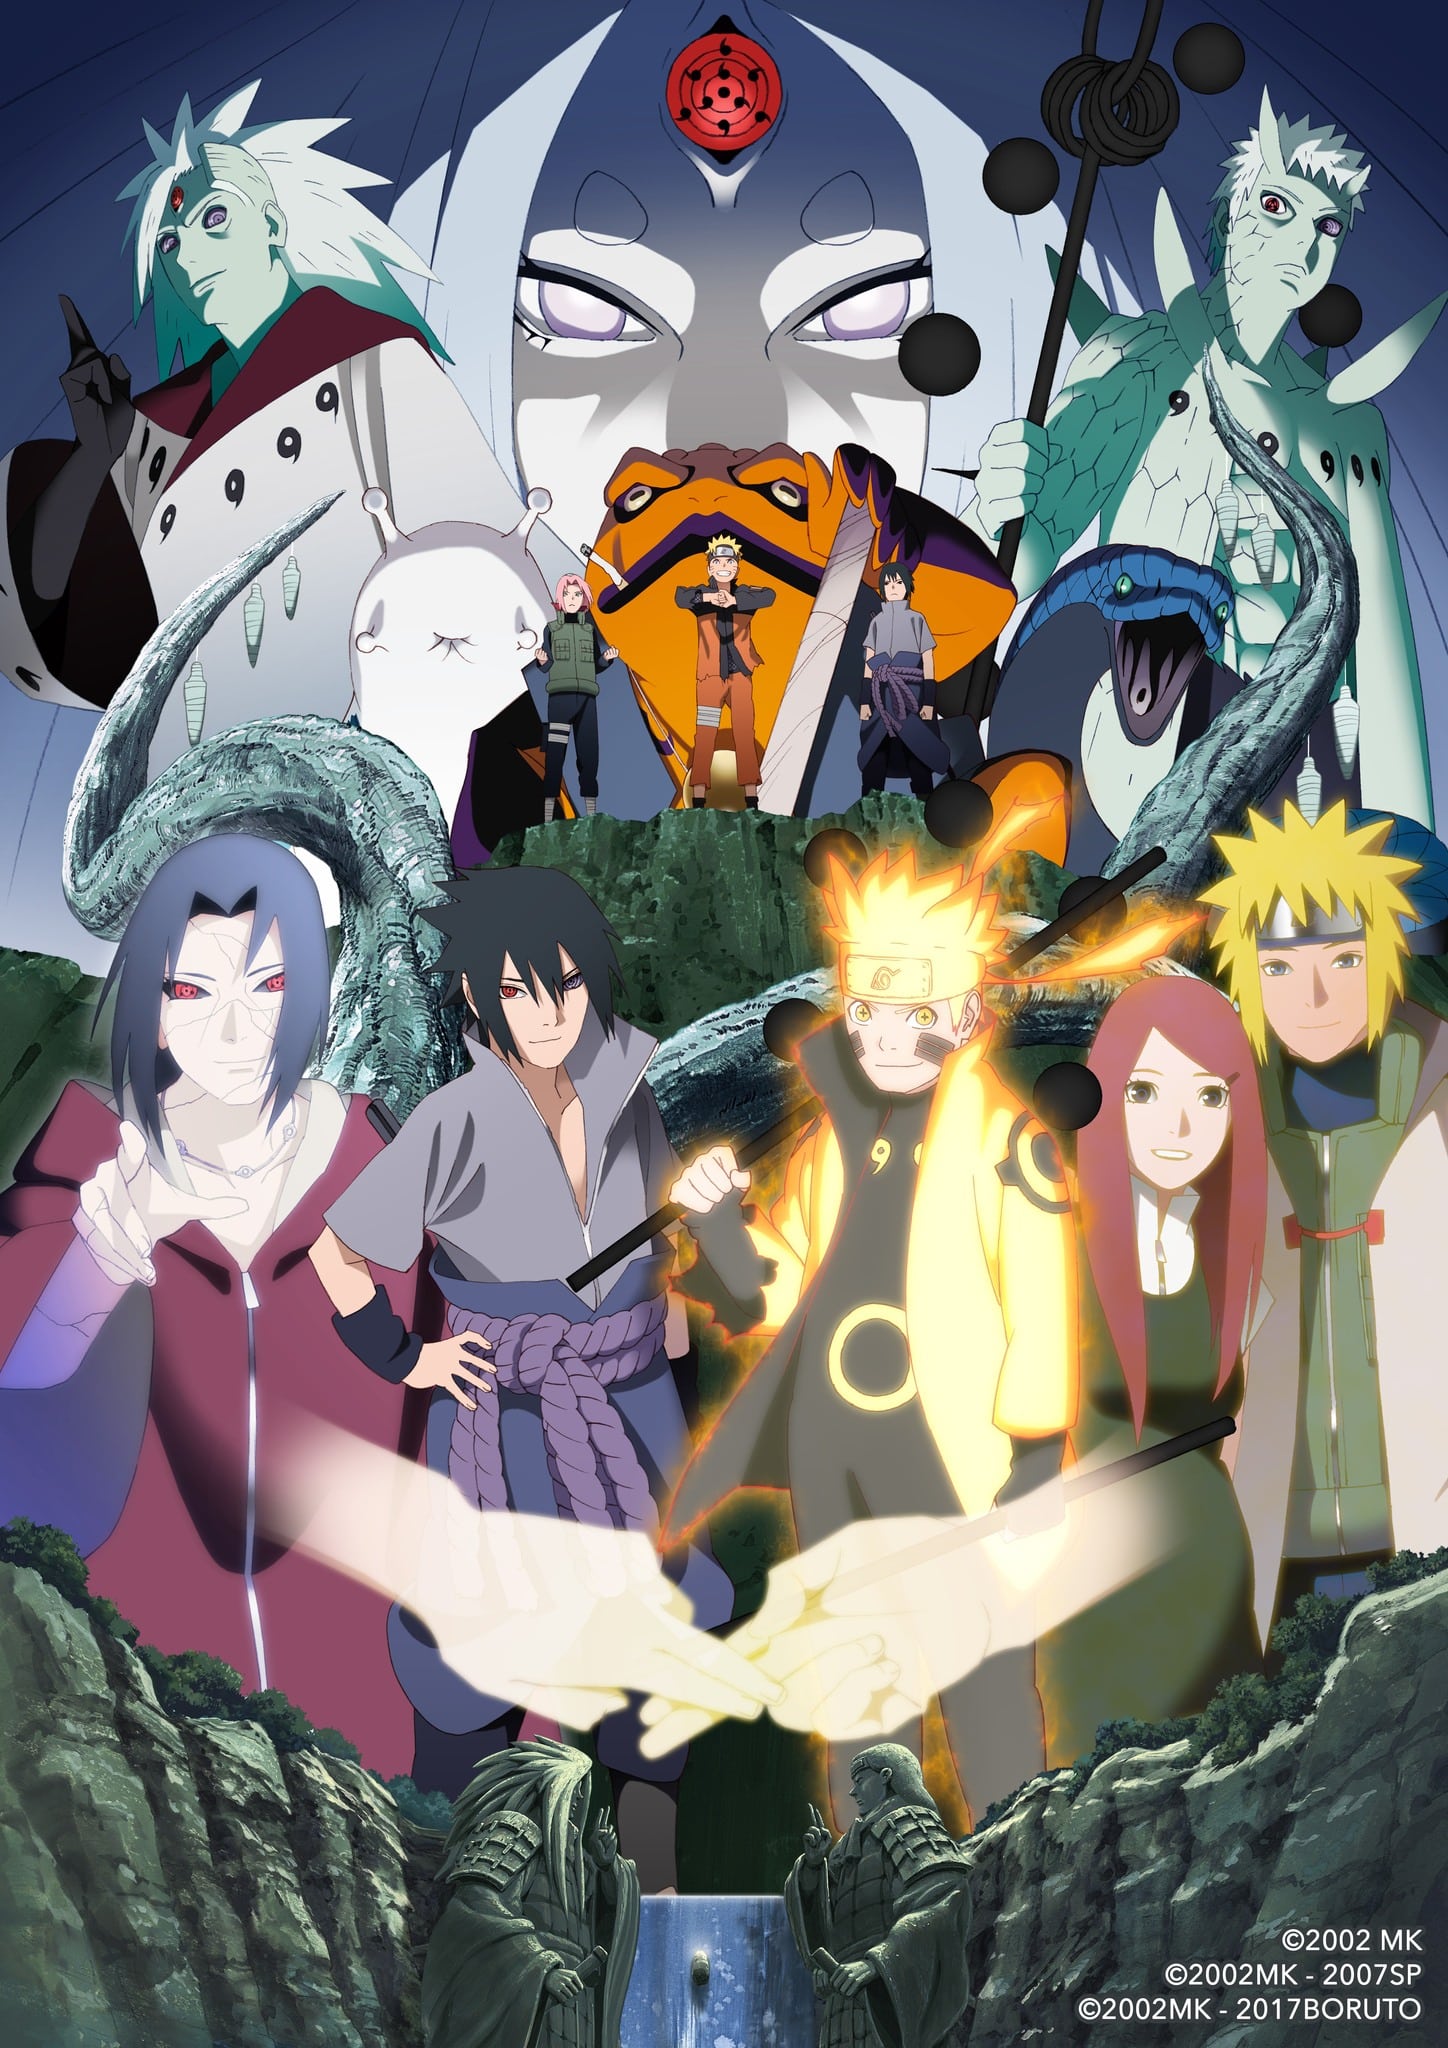 Visuel pour la partie 3 de lanime Naruto à loccasion des 20 ans de la série